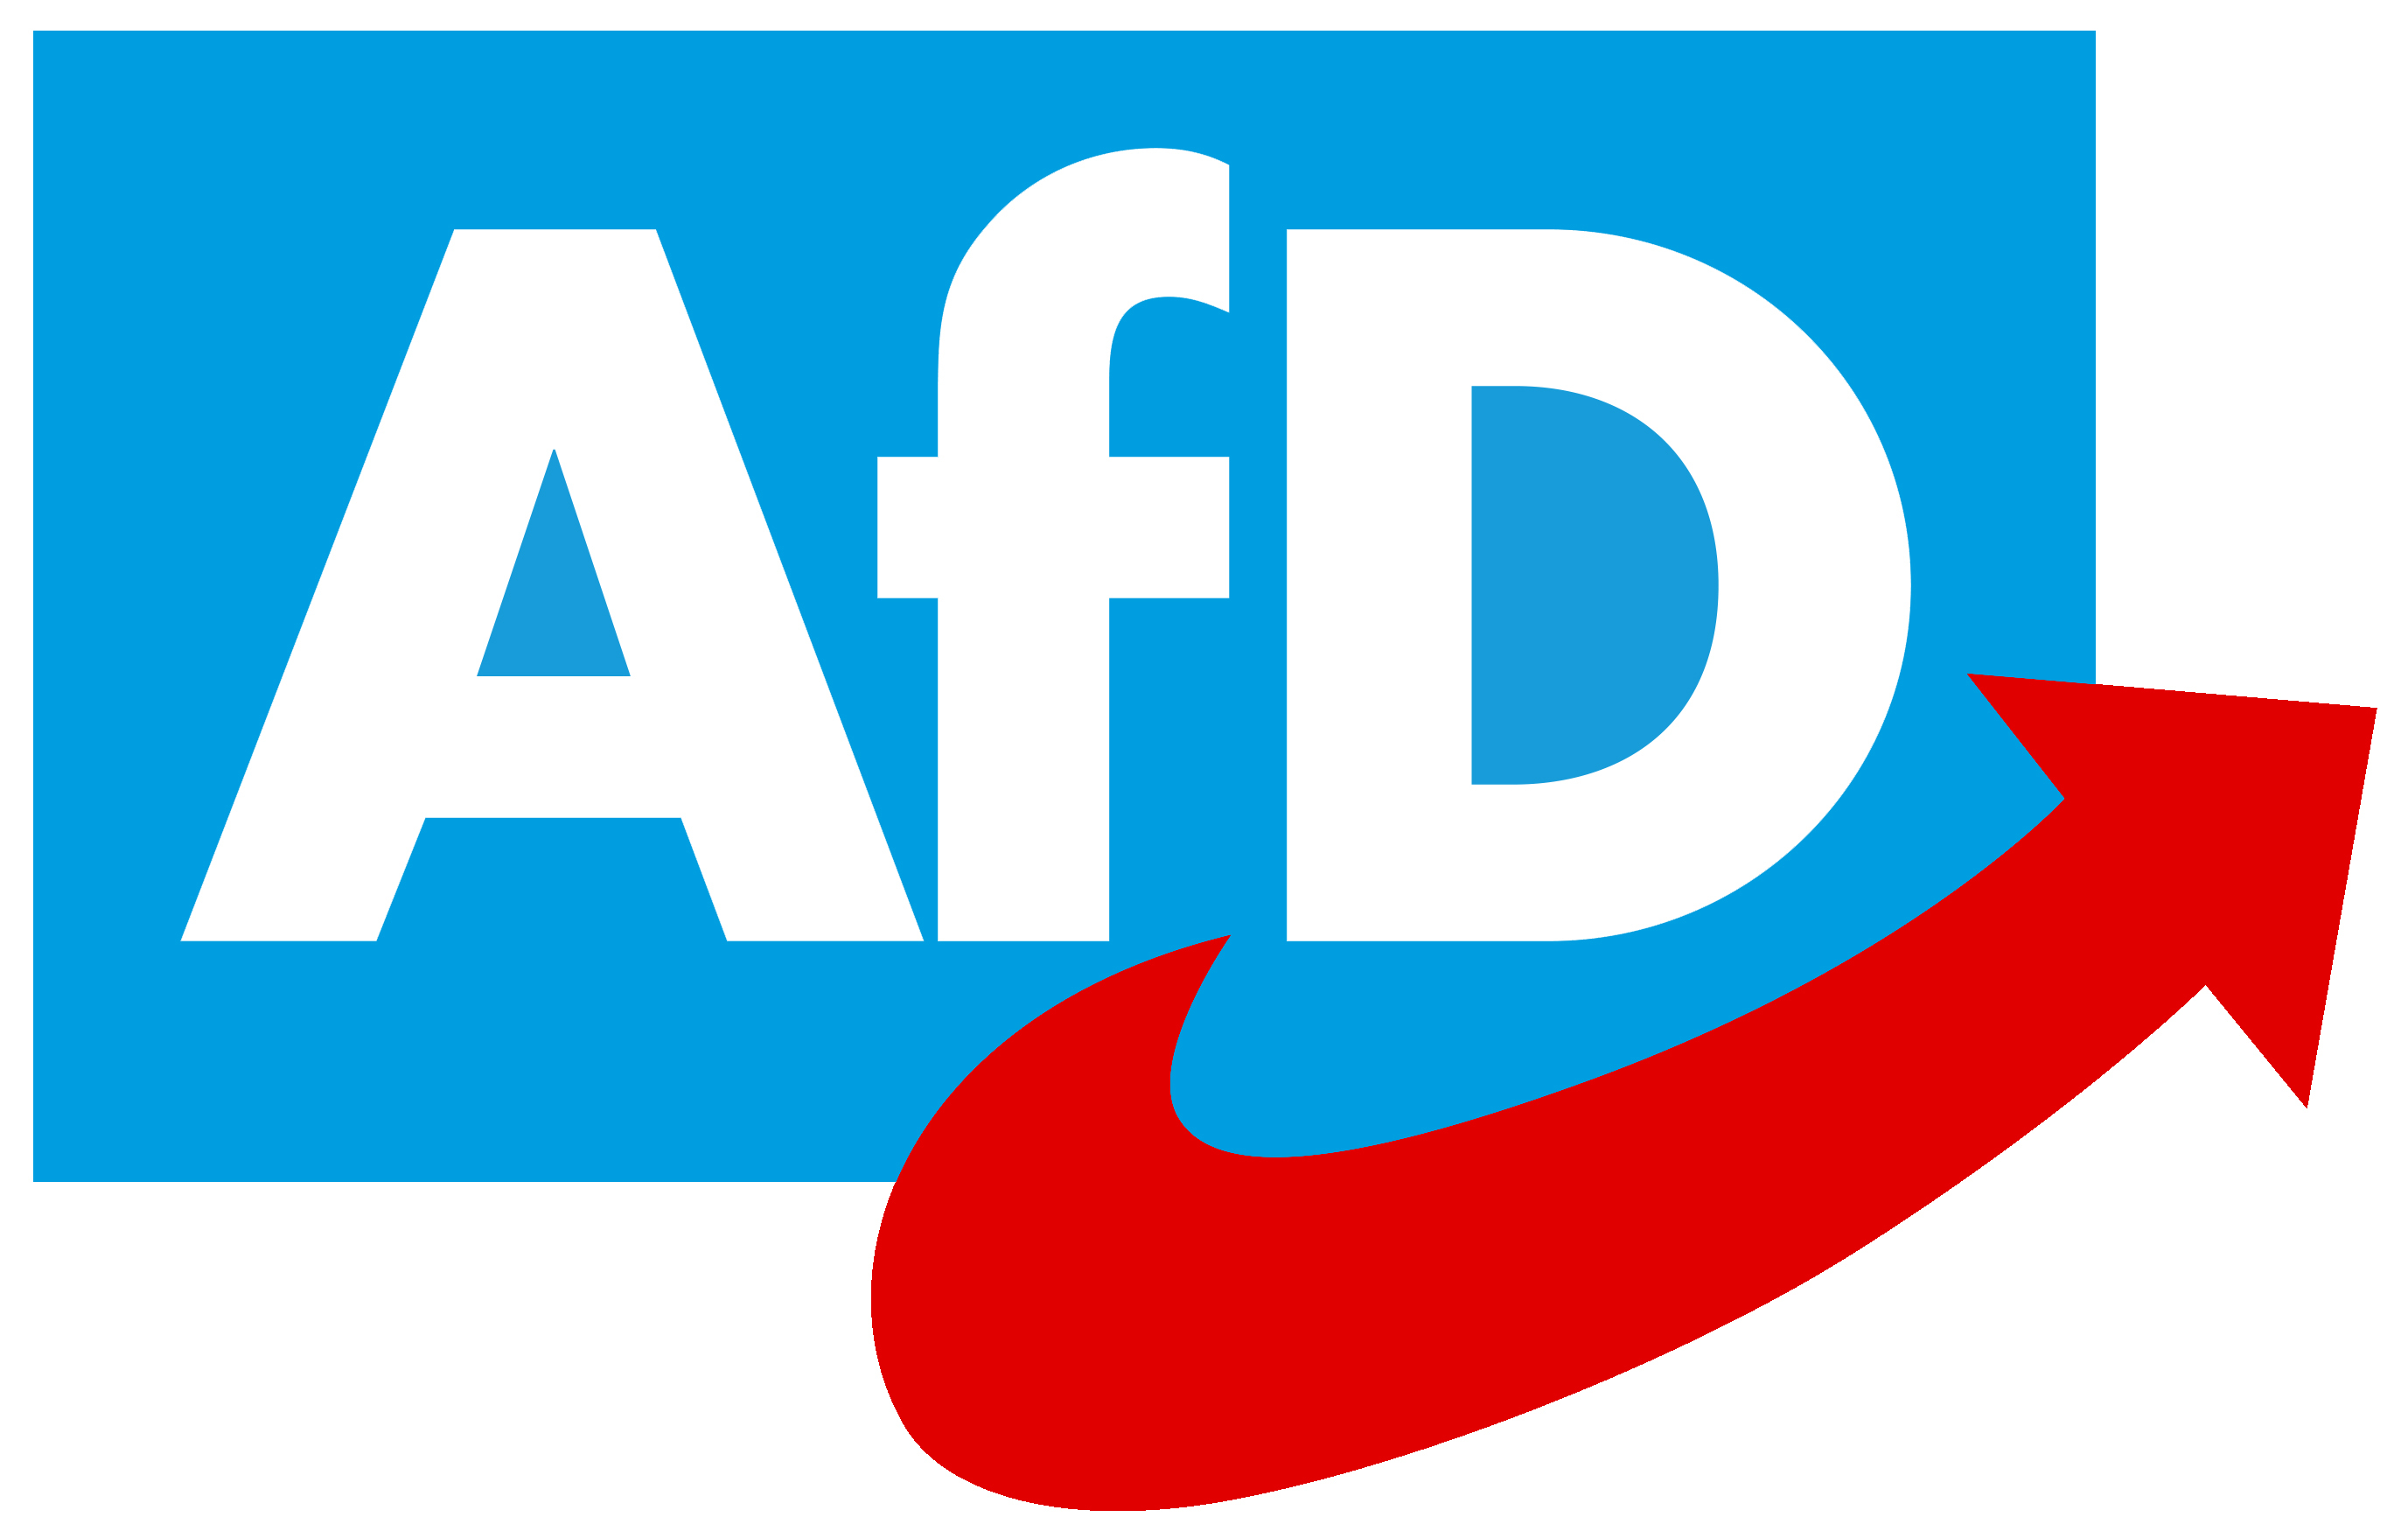 Γερμανία: Κατηγορούνται για δωροδοκία μέλη του AfD